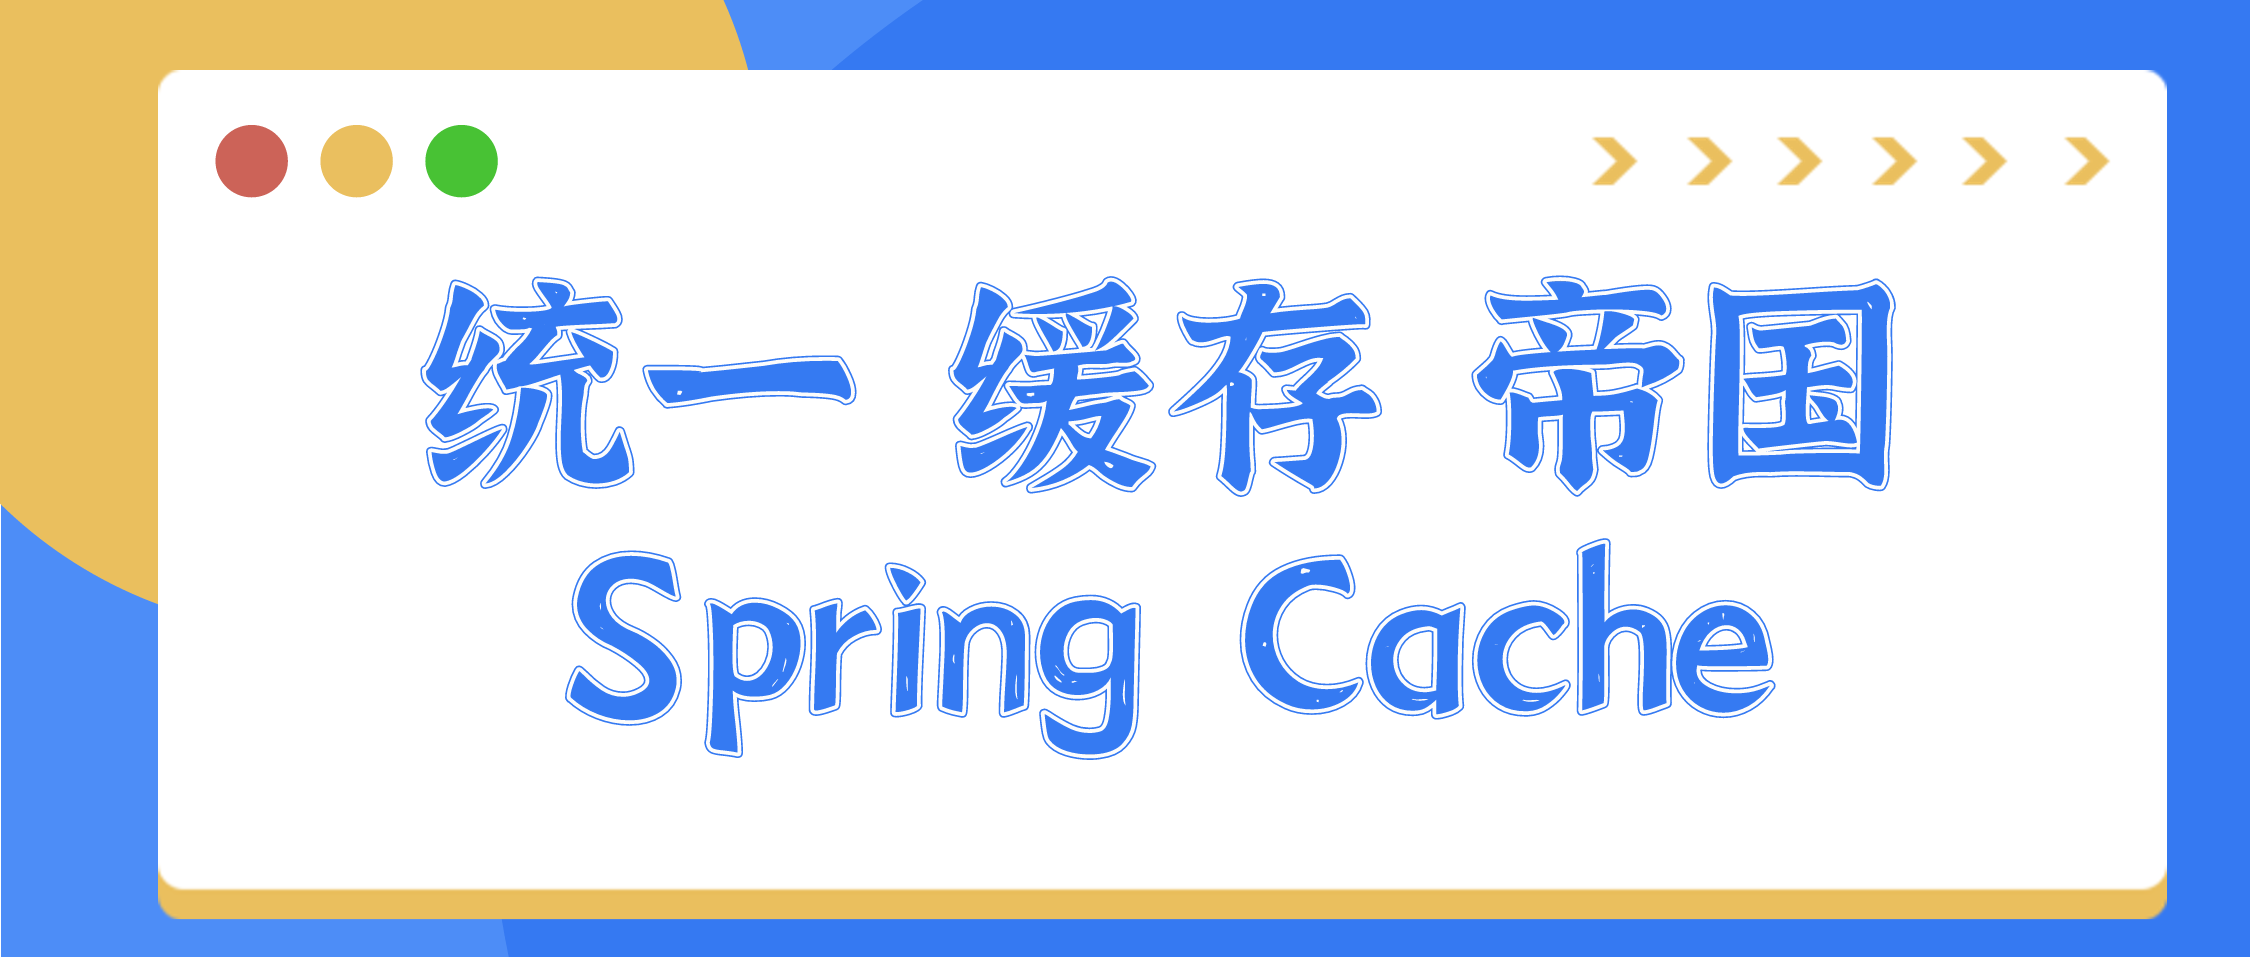 统一缓存帝国 - 实战 Spring Cache